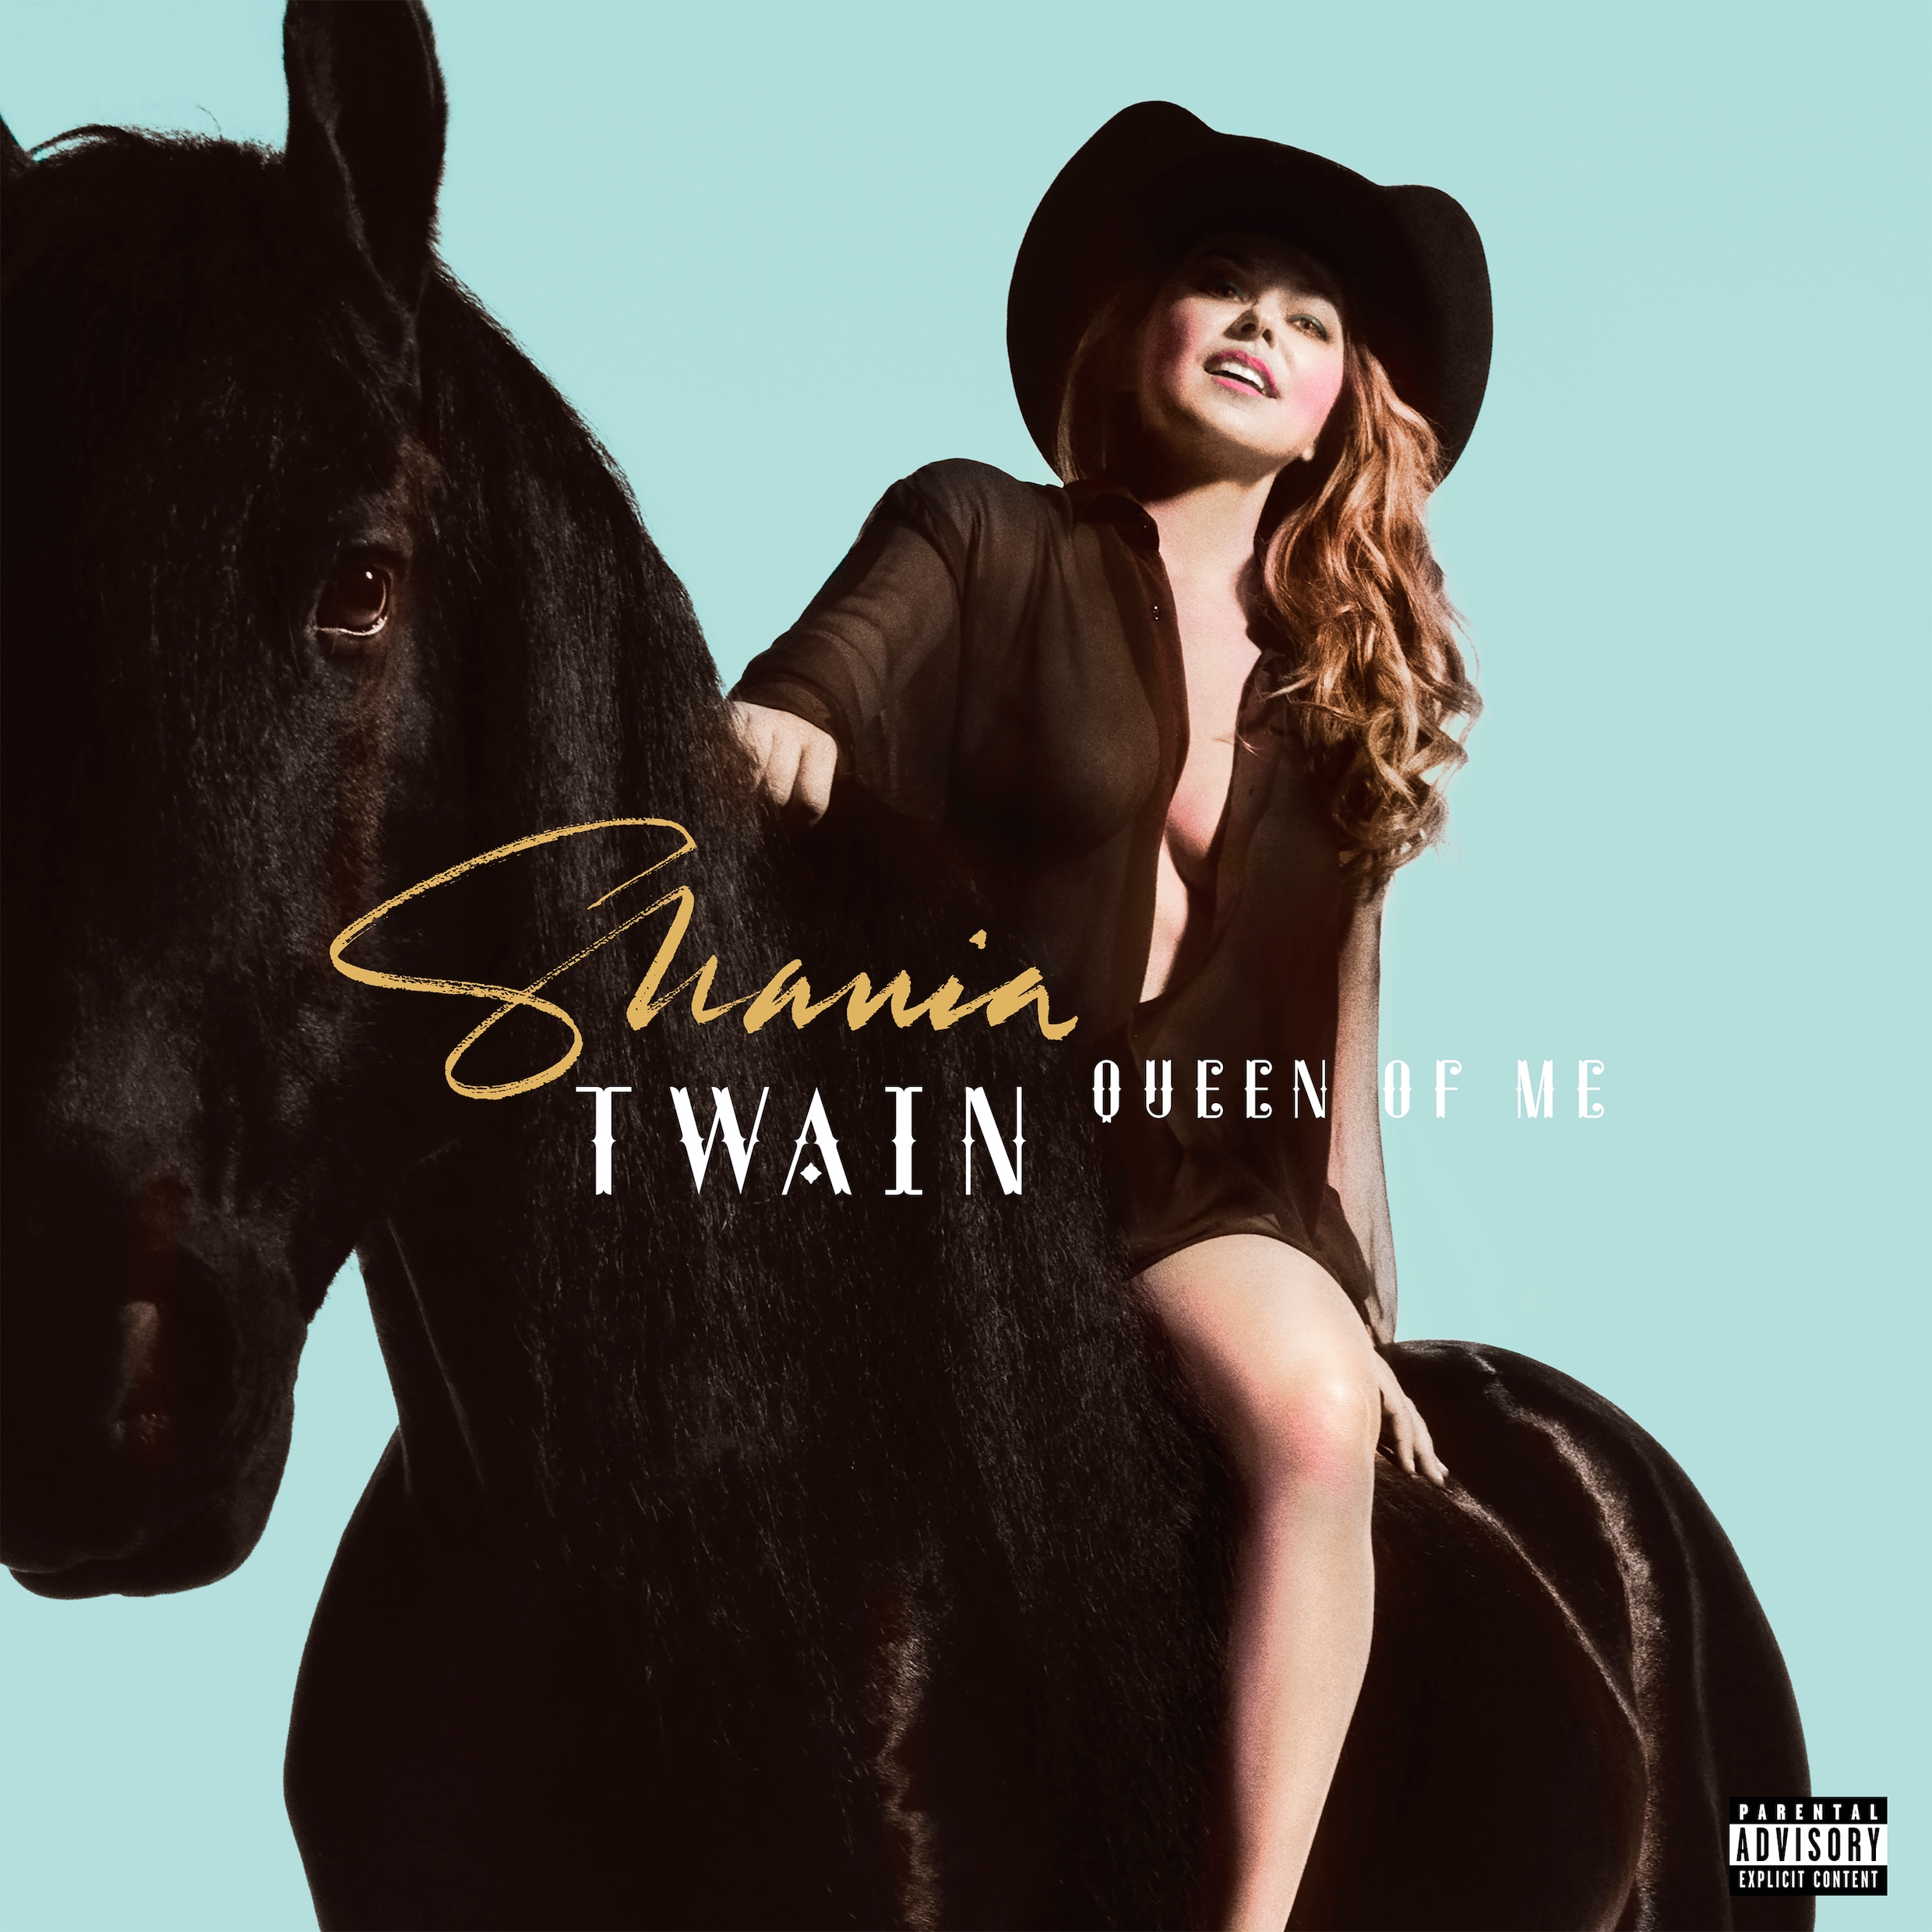 Recensie Shania Twain: idool van Taylor Swift in vertrouwde vorm